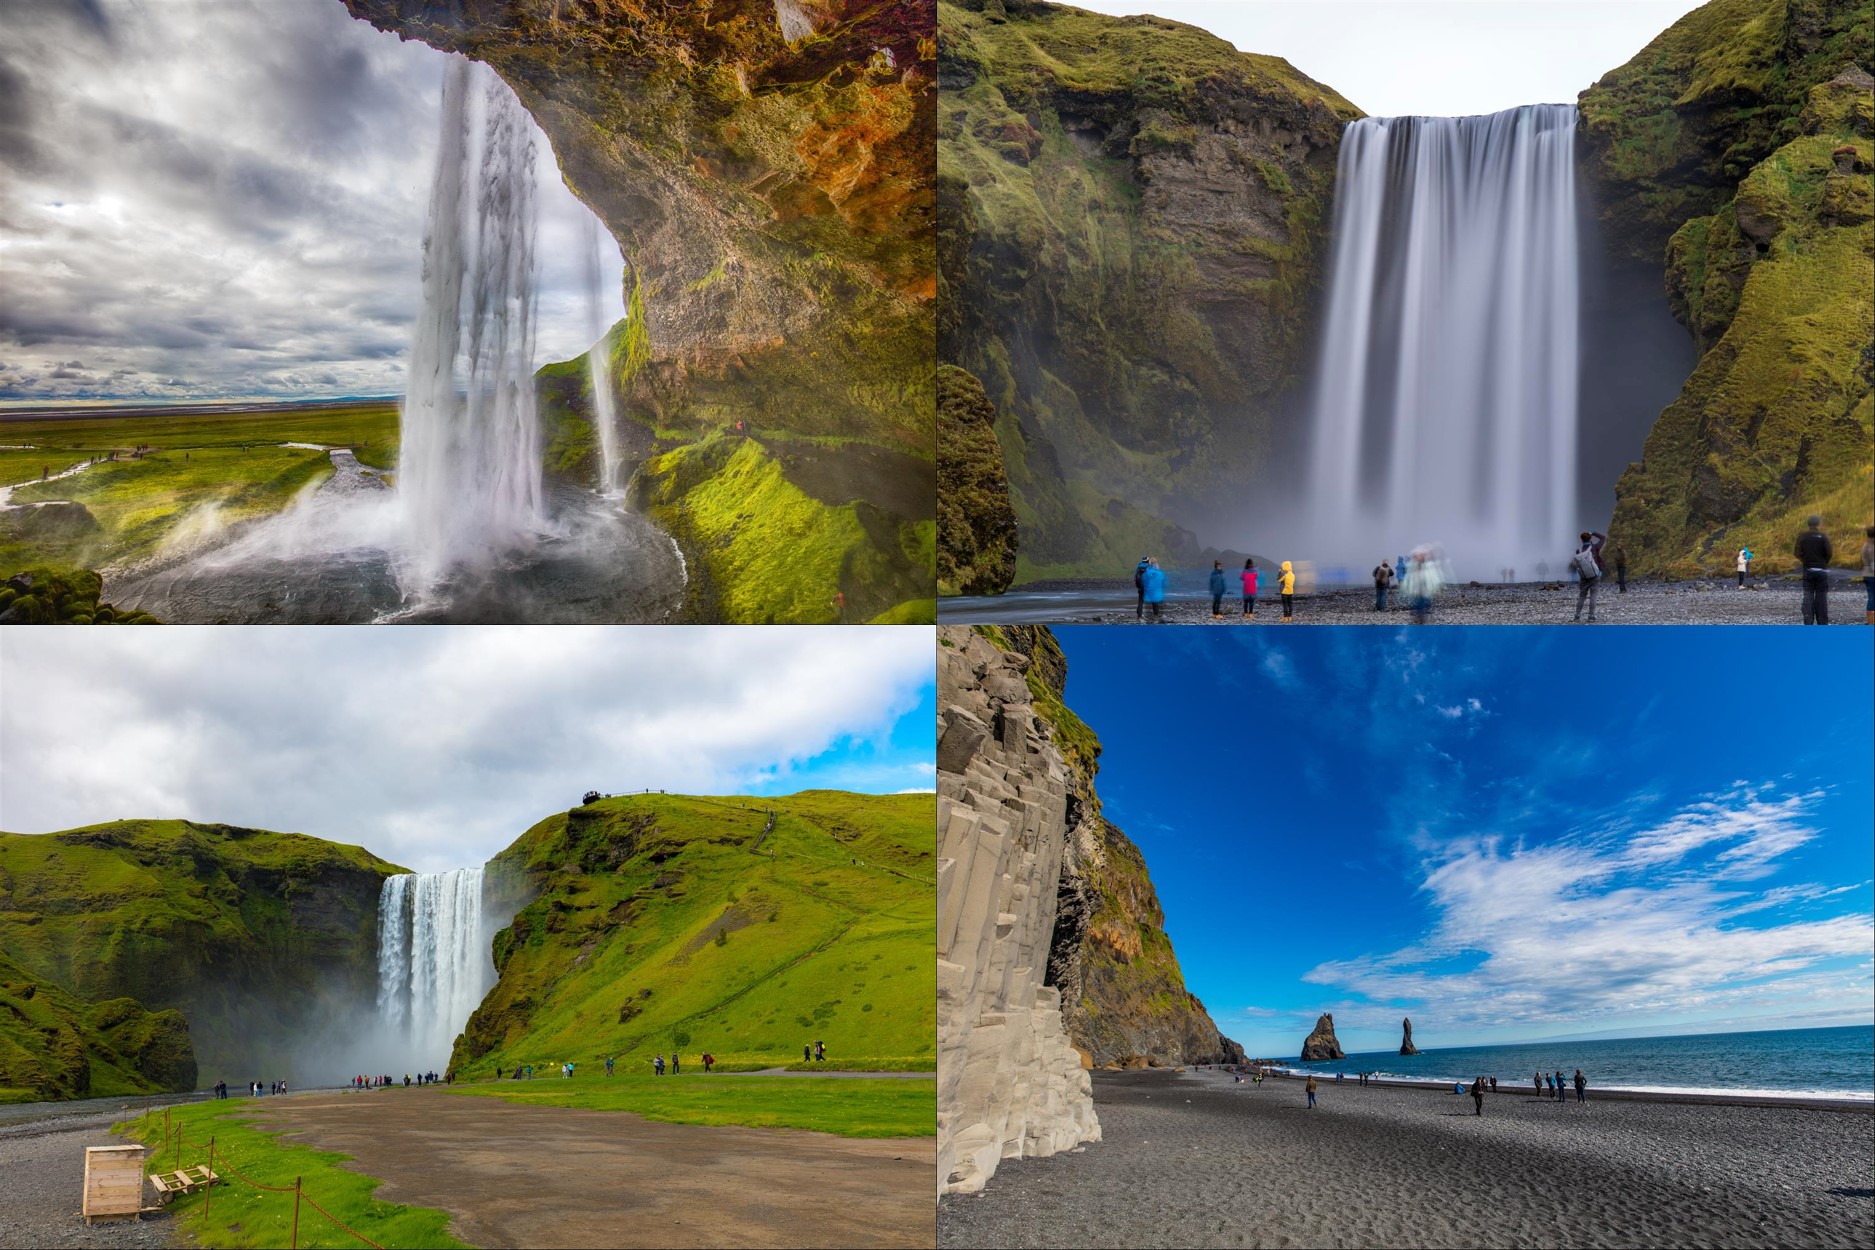 浪漫冰島 - 10 日冰島攝影團，專為喜好攝影朋友設計冰島旅行